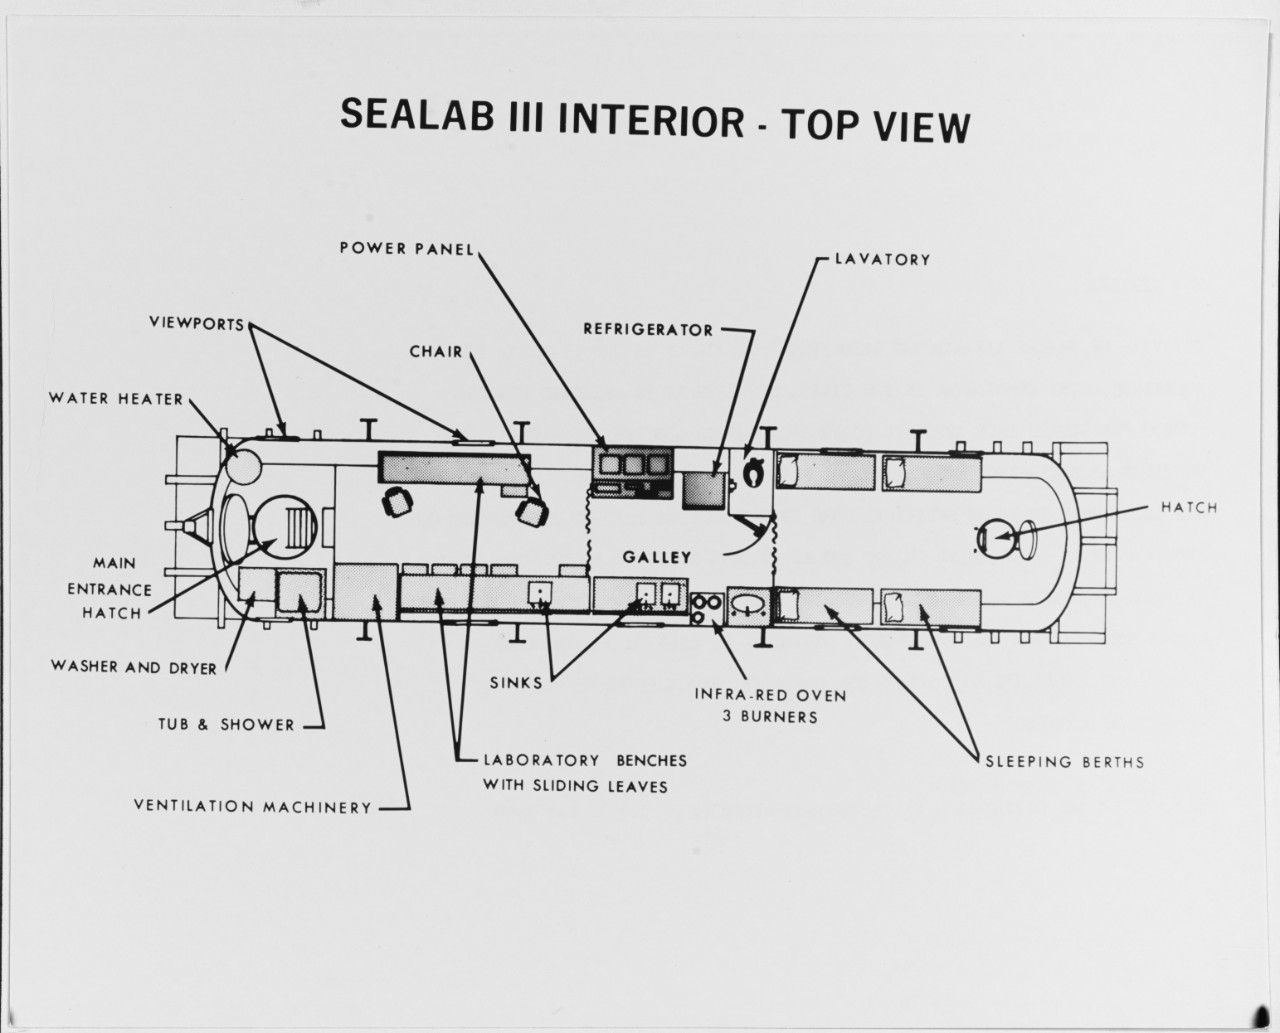 A top view of "Sealab III" habitat